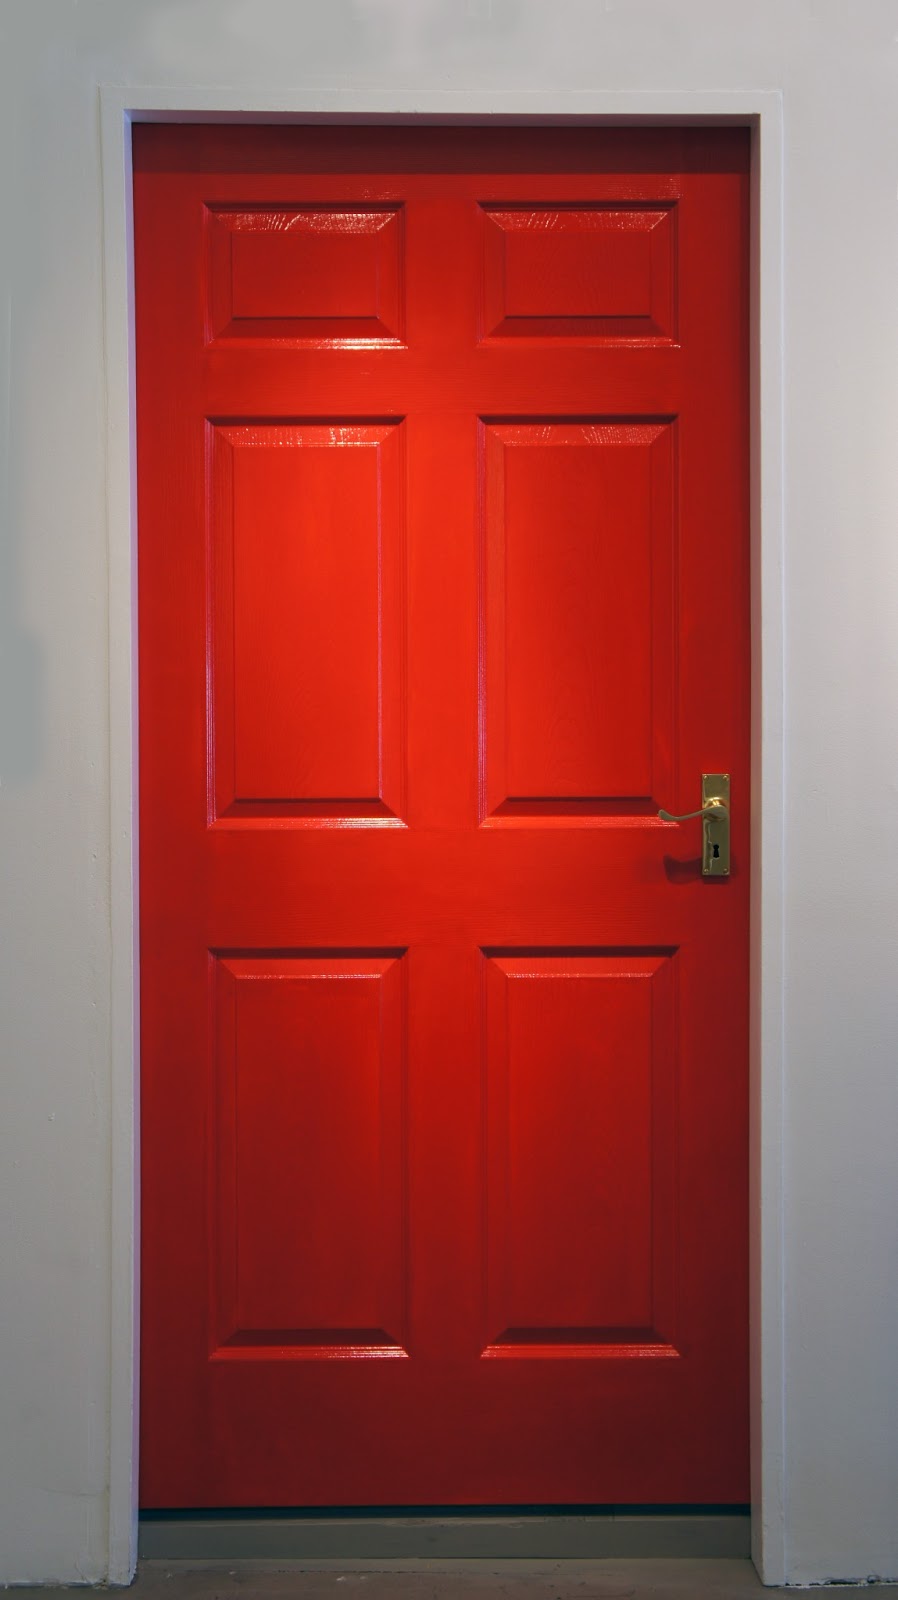 Behind The Red Door